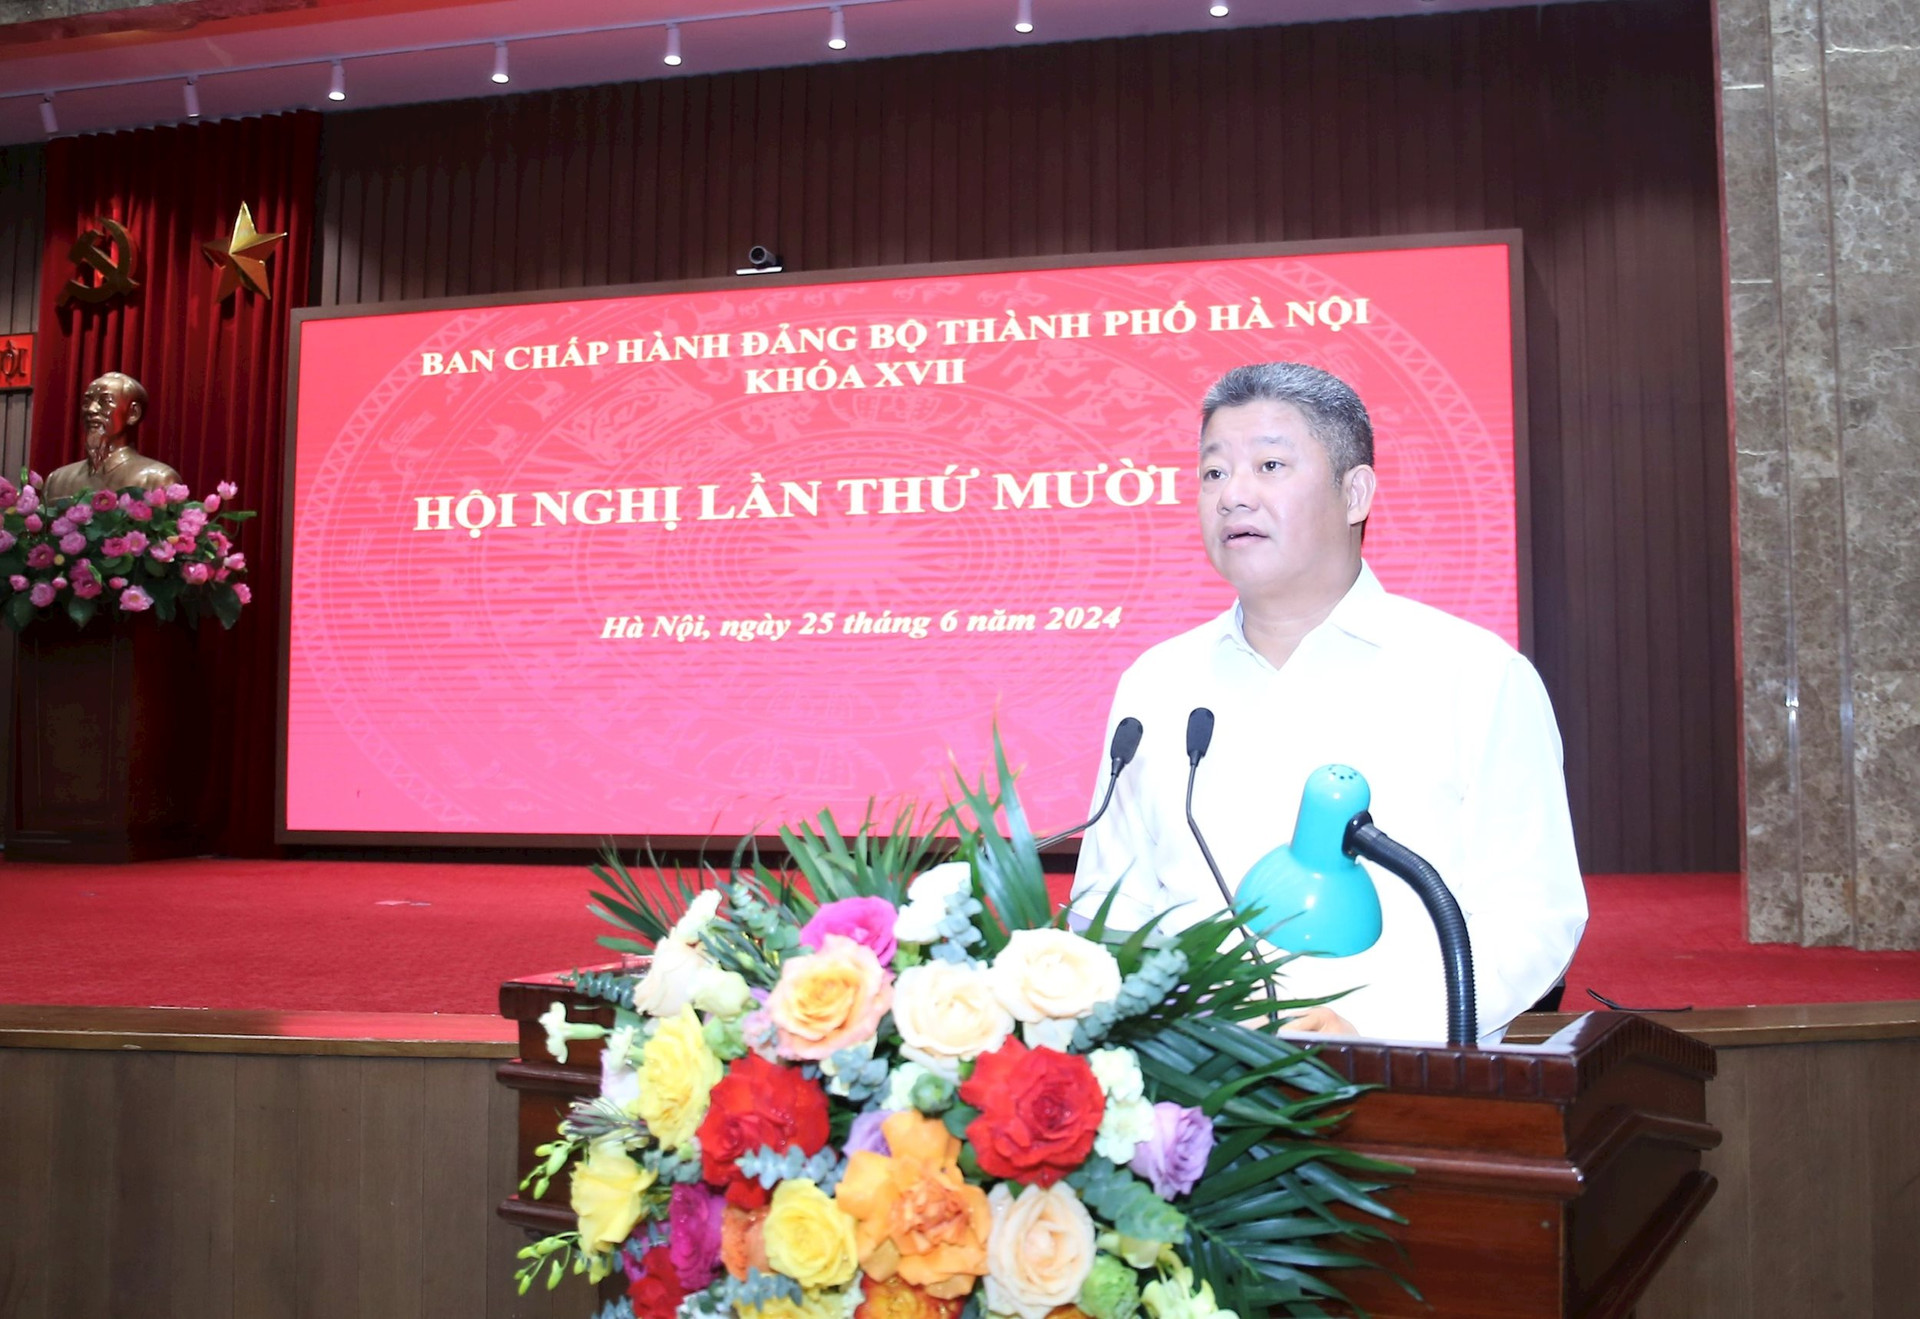 Phó Chủ tịch UBND thành phố Nguyễn Mạnh Quyền trình bày các nội dung về đầu tư công tại hội nghị. Ảnh: Viết Thành